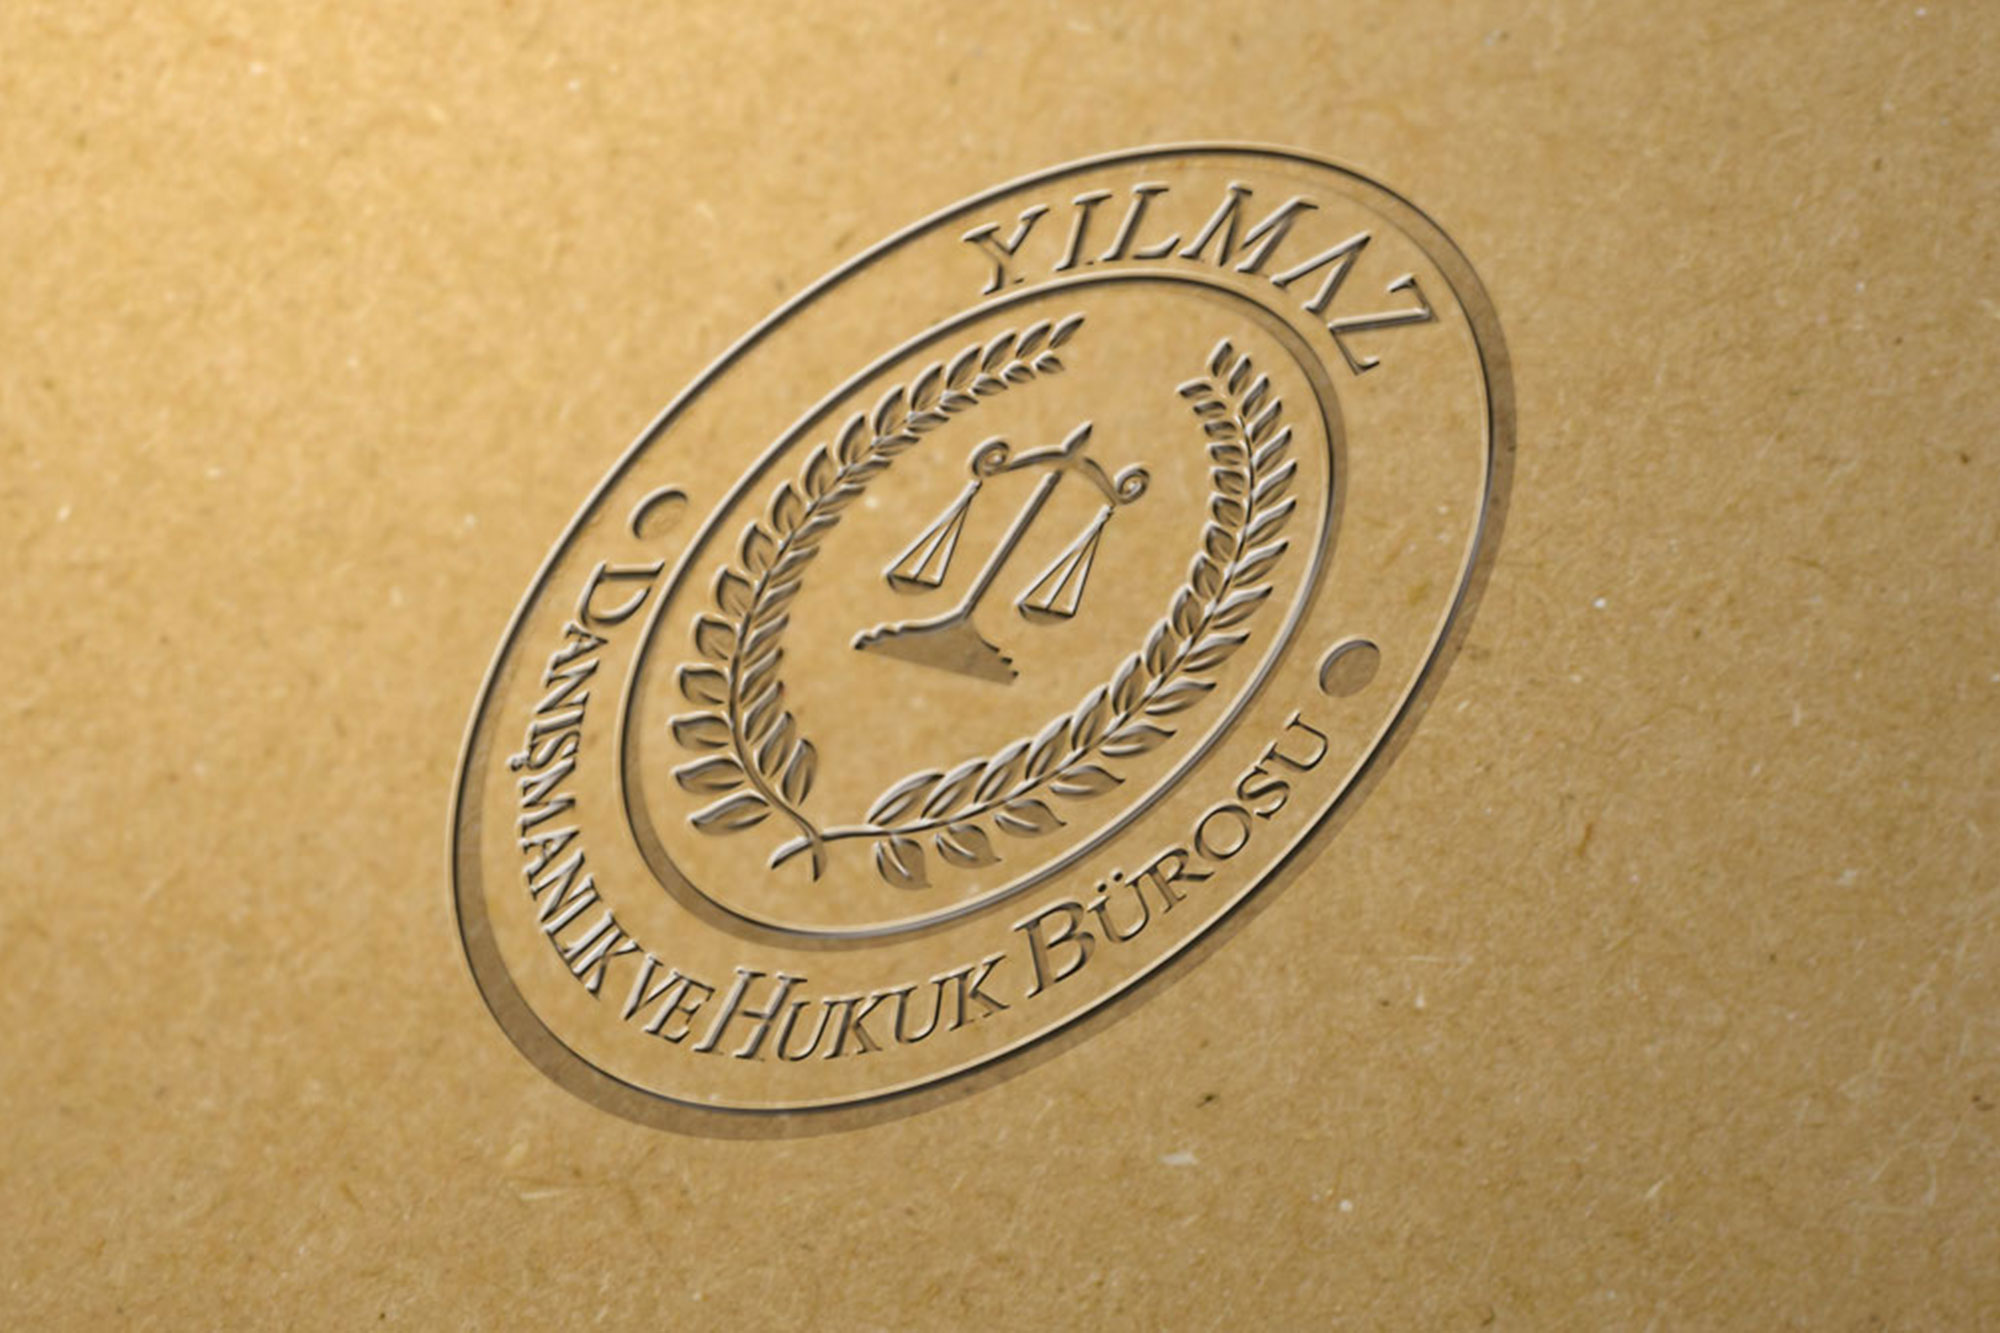 Yılmaz Hukuk Logo ve Kurumsal Kimlik